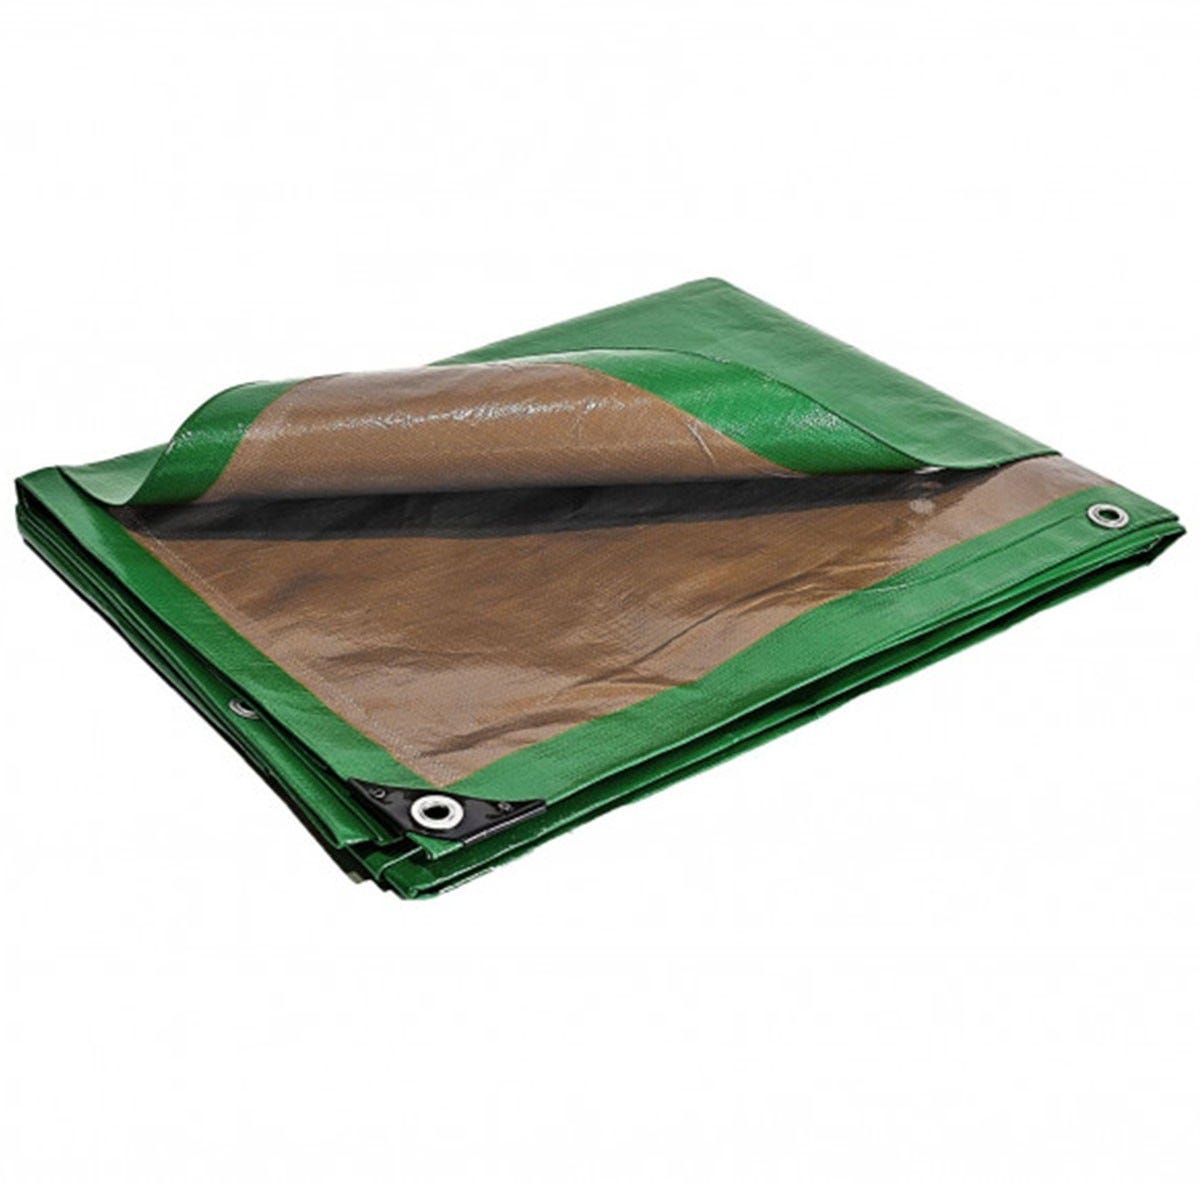 Bâche plastique 6 x 10 m étanche traitée anti UV verte et marron 250g/m² - bâche de protection polyéthylène haute qualité 0